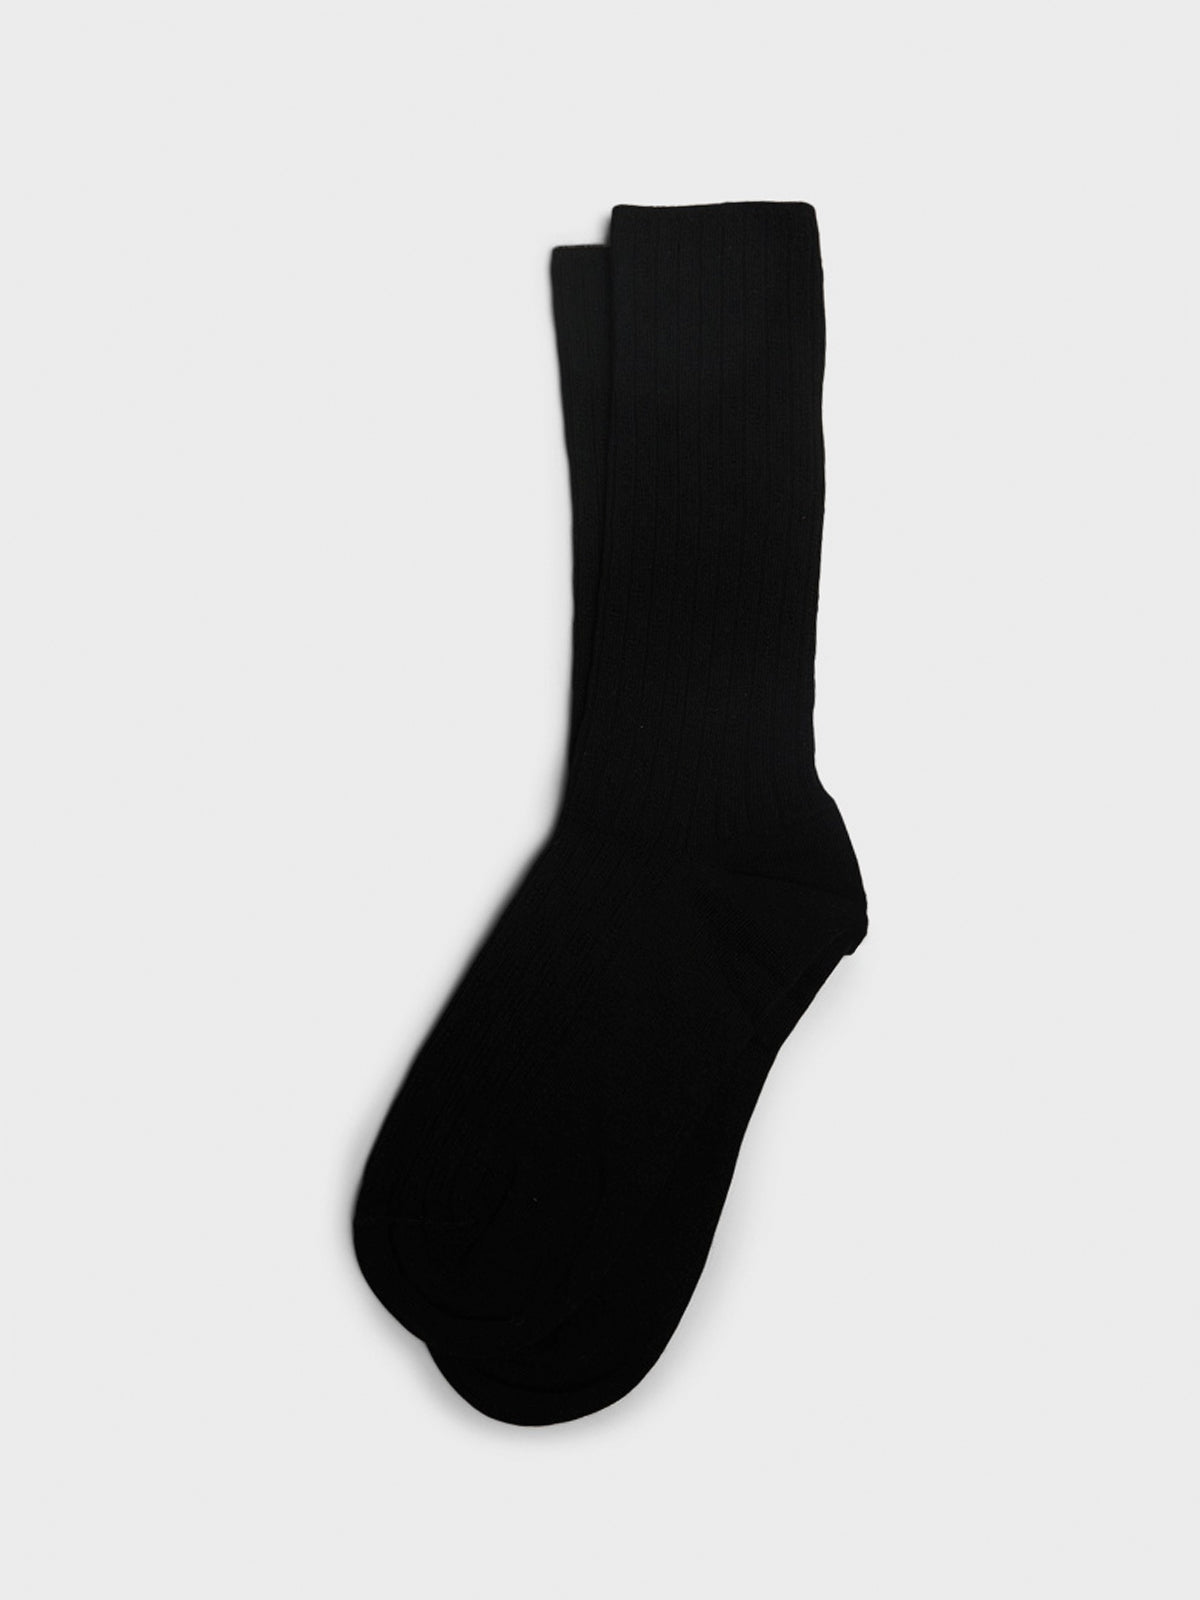 Mrs. Pointelle Socks in Black